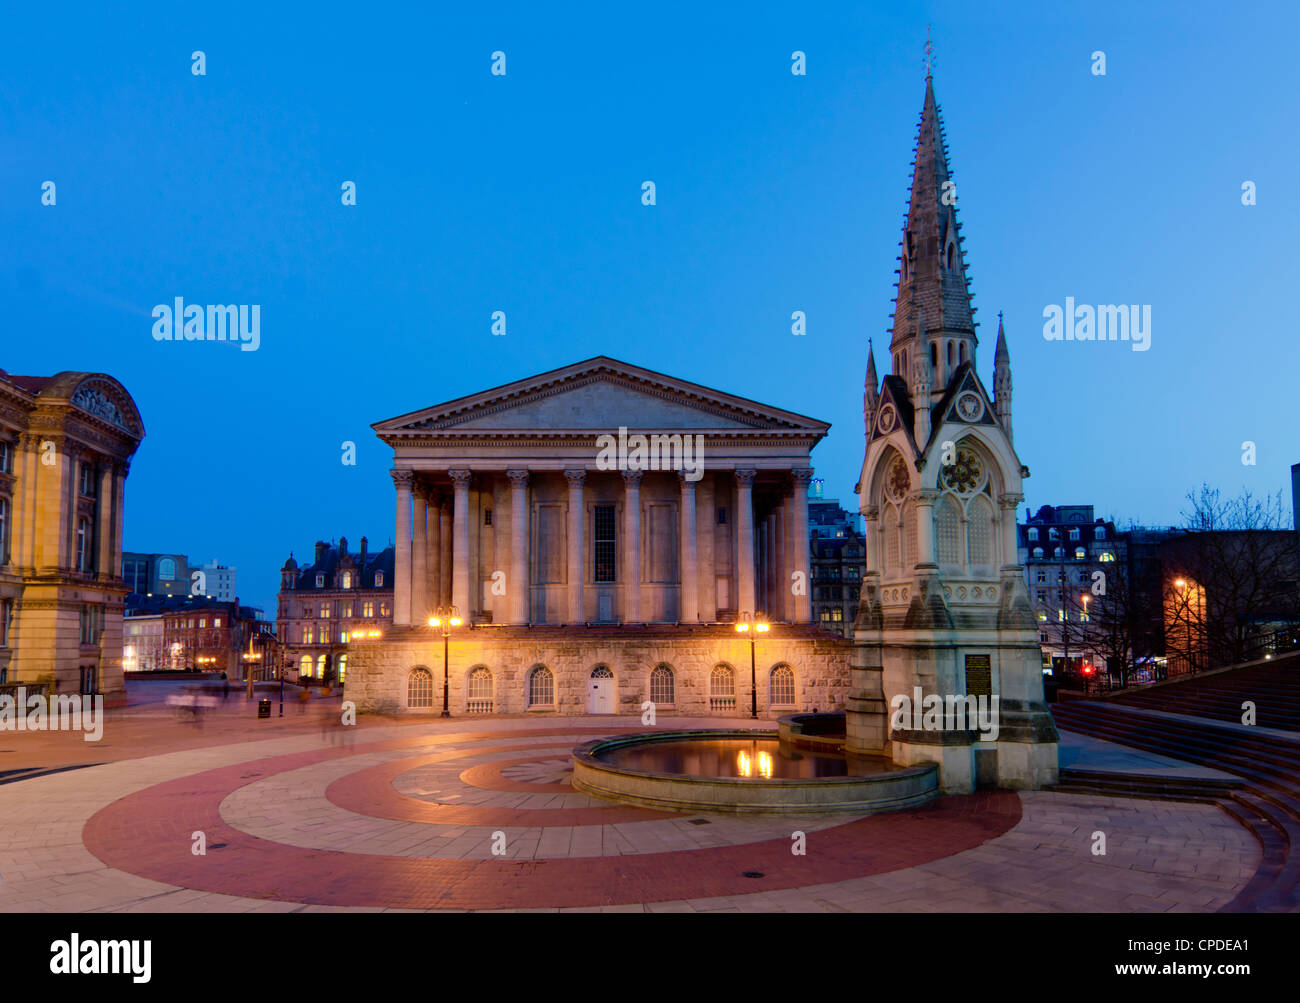 Chamberlain Square, au crépuscule, Birmingham, Midlands, Angleterre, Royaume-Uni, Europe Banque D'Images